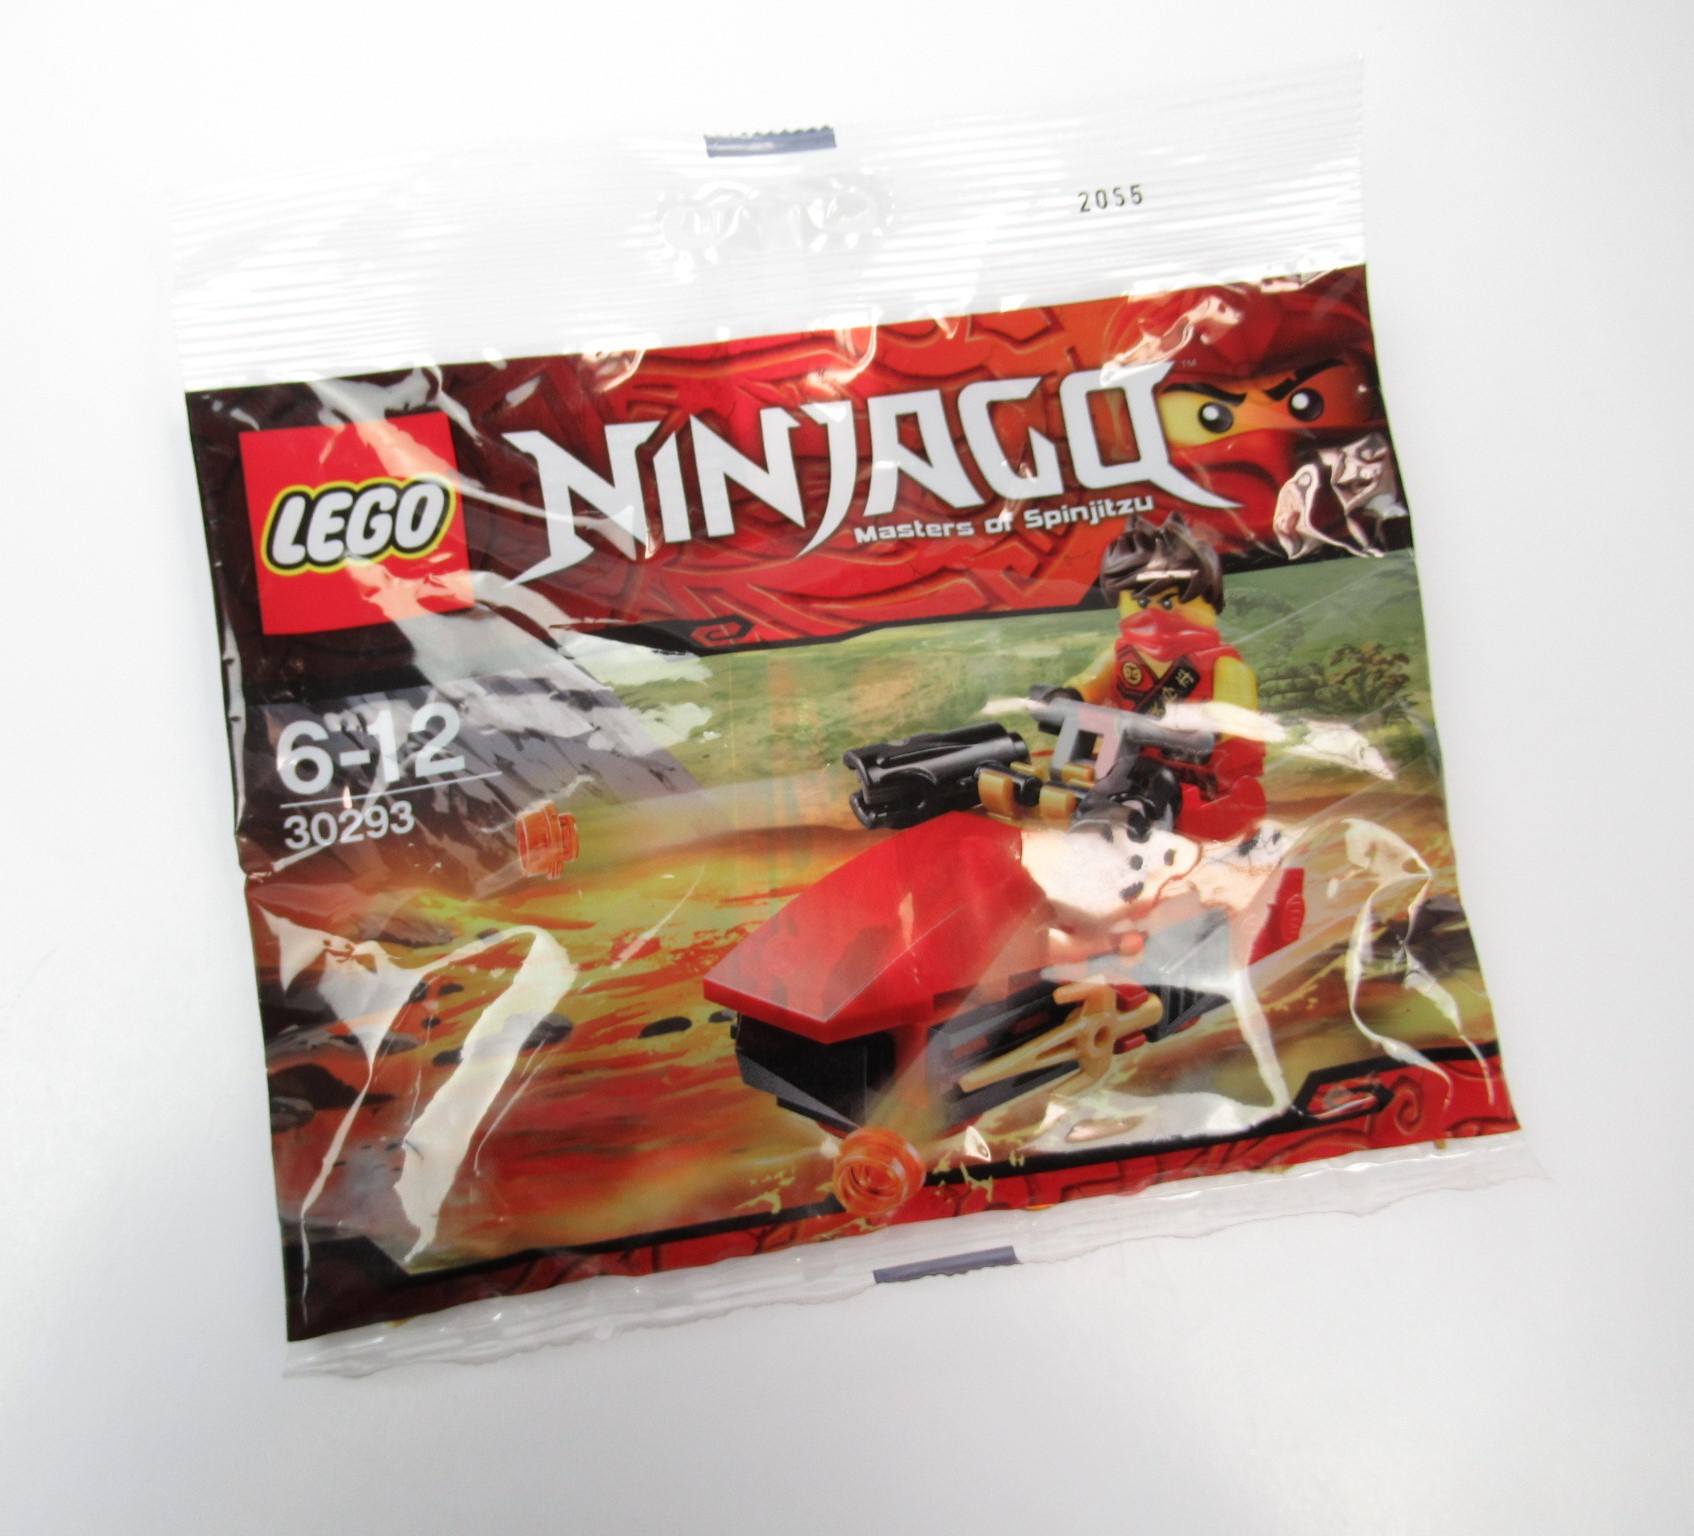 Resmi LEGO Ninjago 30293: Kai Drifter Polybag